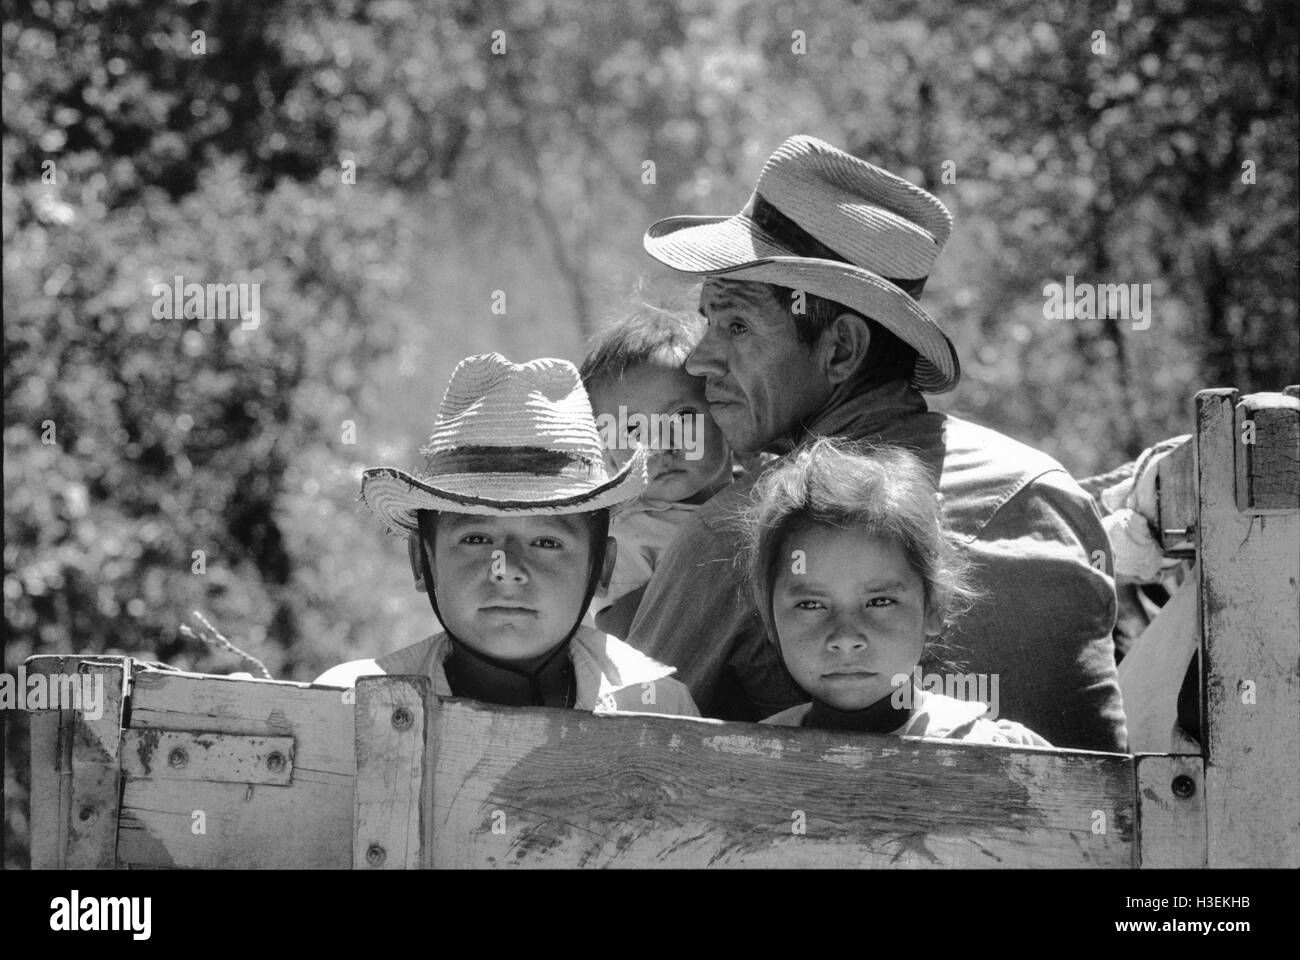 SAN SALVADOR, EL SALVADOR, El Salvador FEB 1990 Flüchtlinge nach Hause zurückkehren Morazan Provinz nach neun Jahren jenseits der Grenze in Honduras Flüchtlingslager in Colomoncagua. Stockfoto